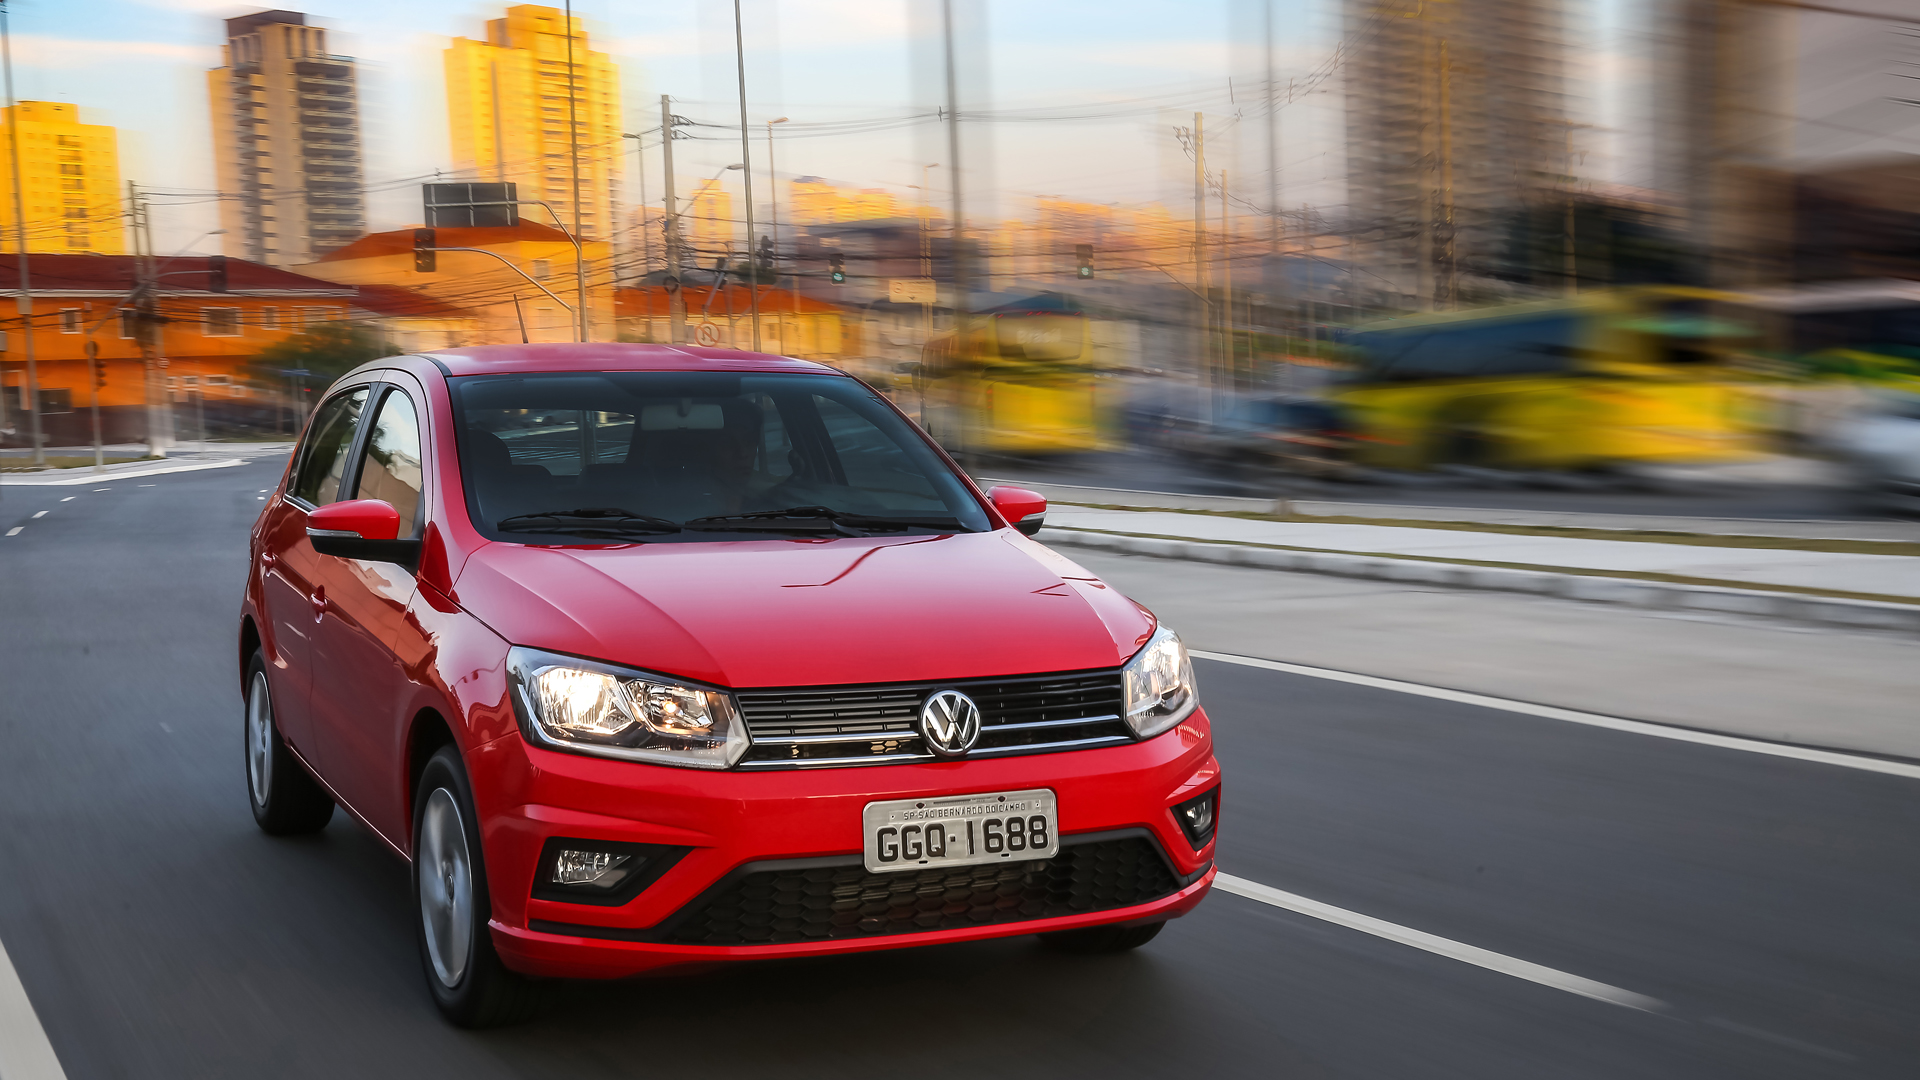 Volkswagen Gol foi o carro mais roubado em São Paulo entre janeiro e fevereiro